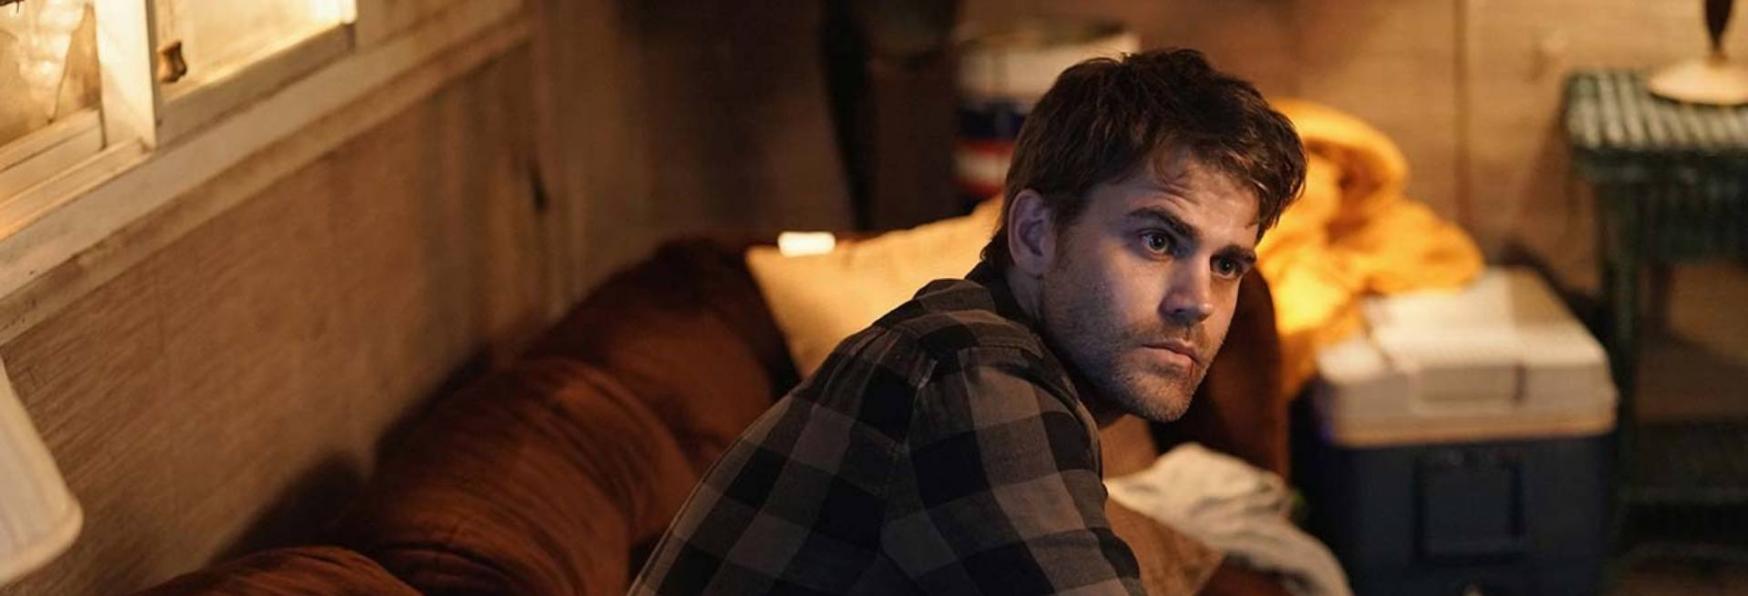 Confessions: Paul Wesley (The Vampire Diaries) sarà il Protagonista della Serie TV di Netflix